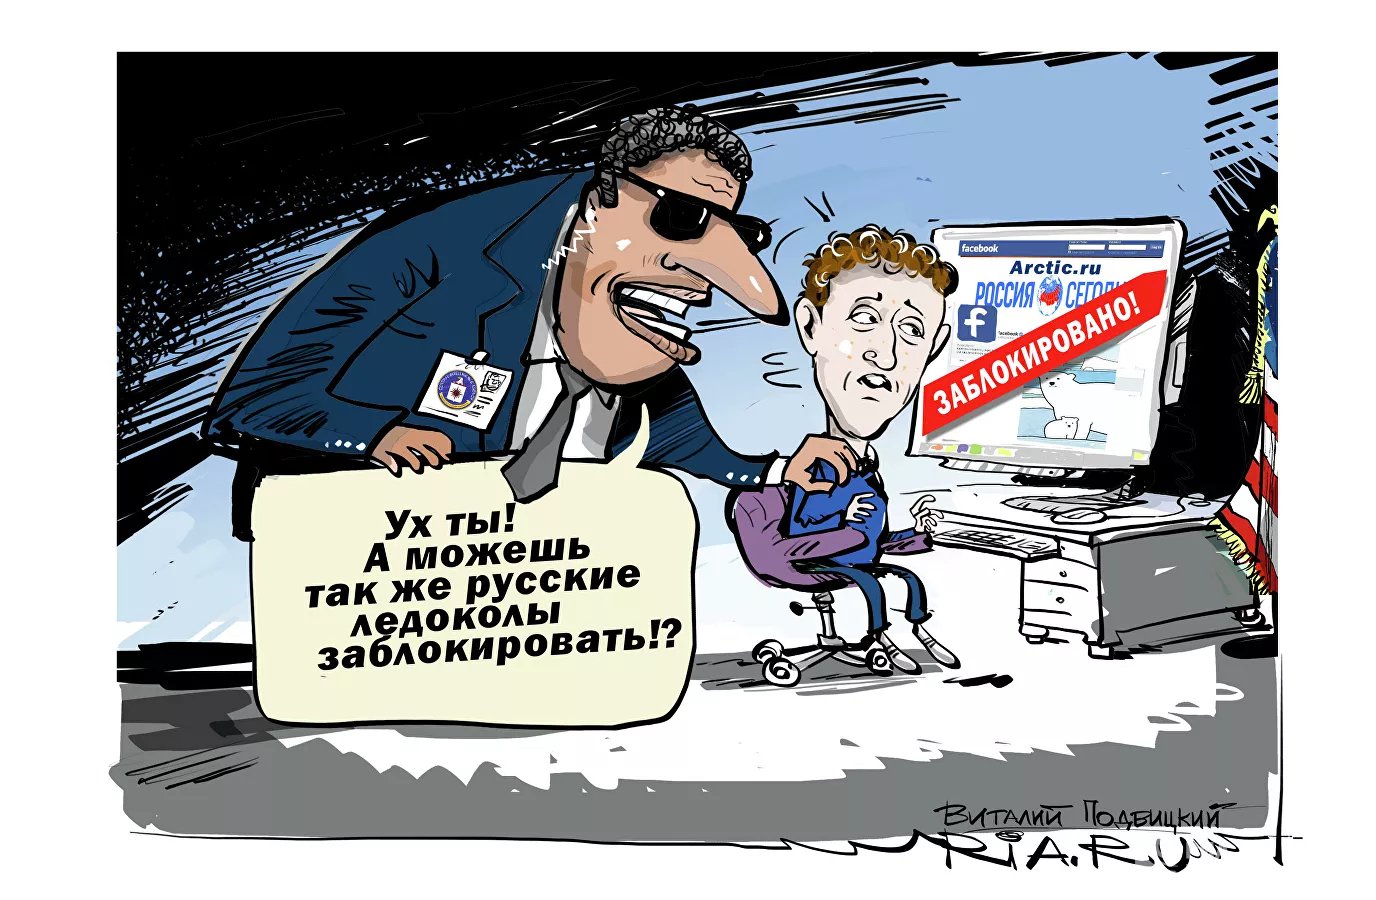 Карикатура "С глаз долой", Виталий Подвицкий